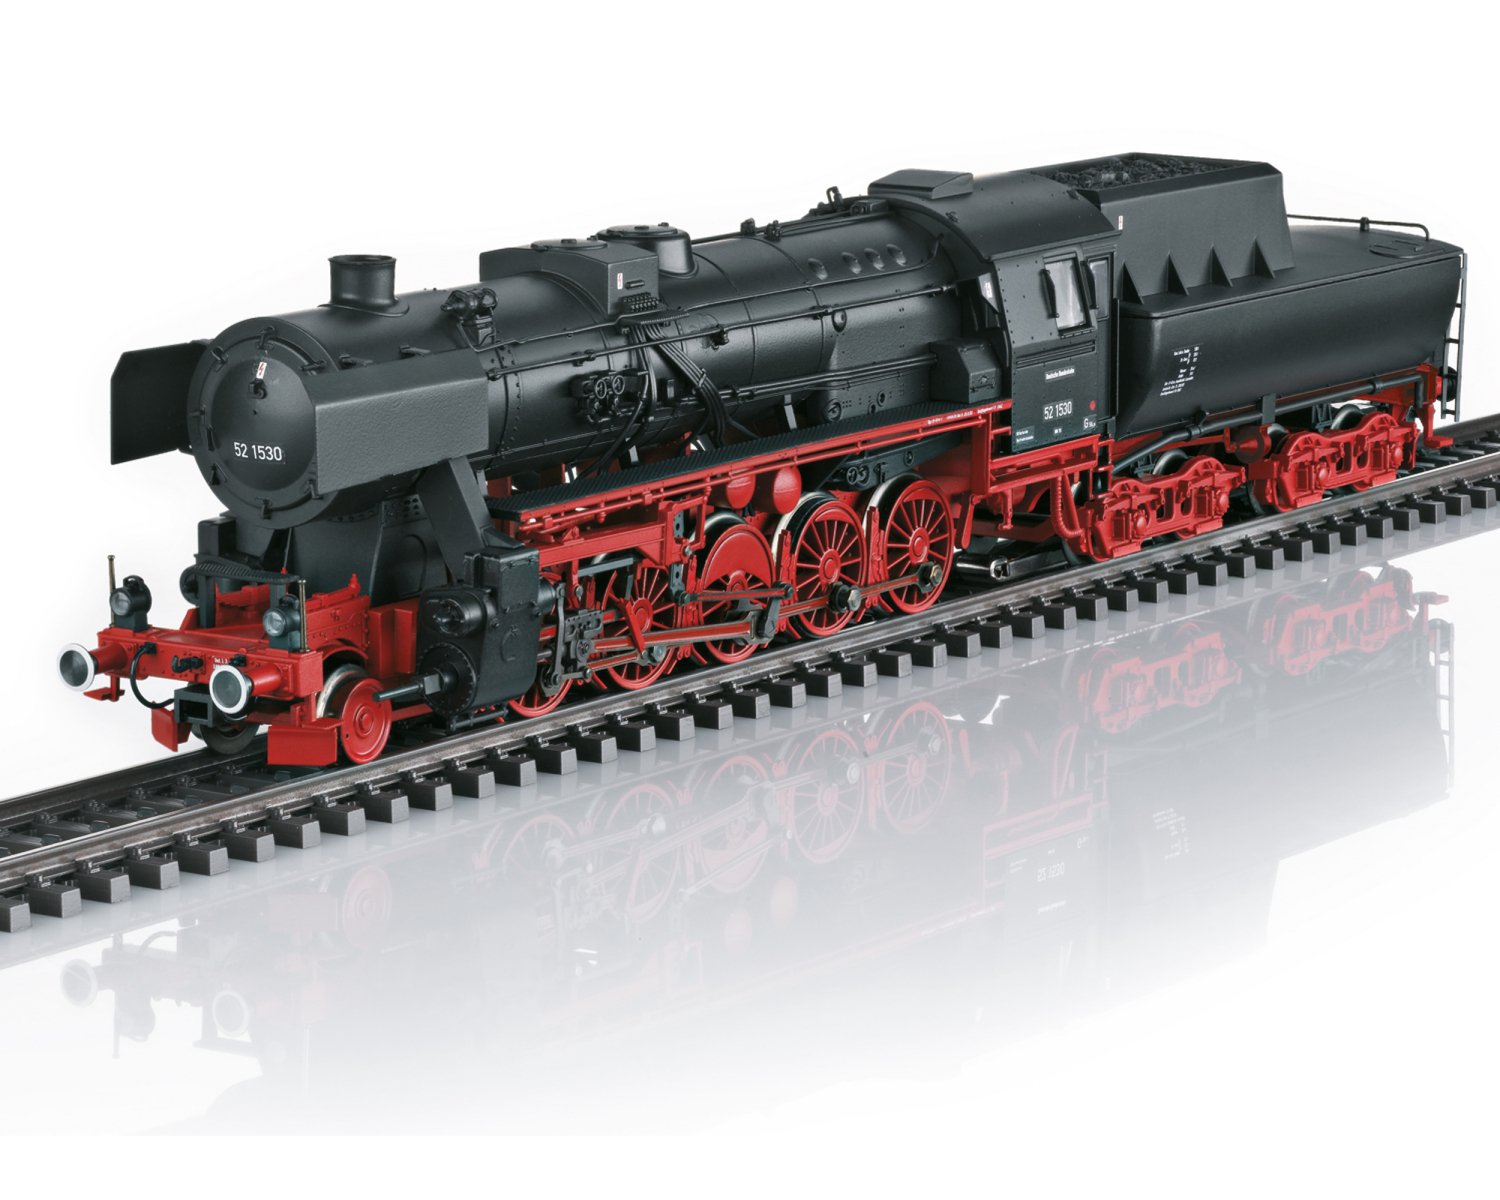 メルクリン HOゲージ 蒸気機関車 38 3553 旧ドイツ国鉄 - 鉄道模型